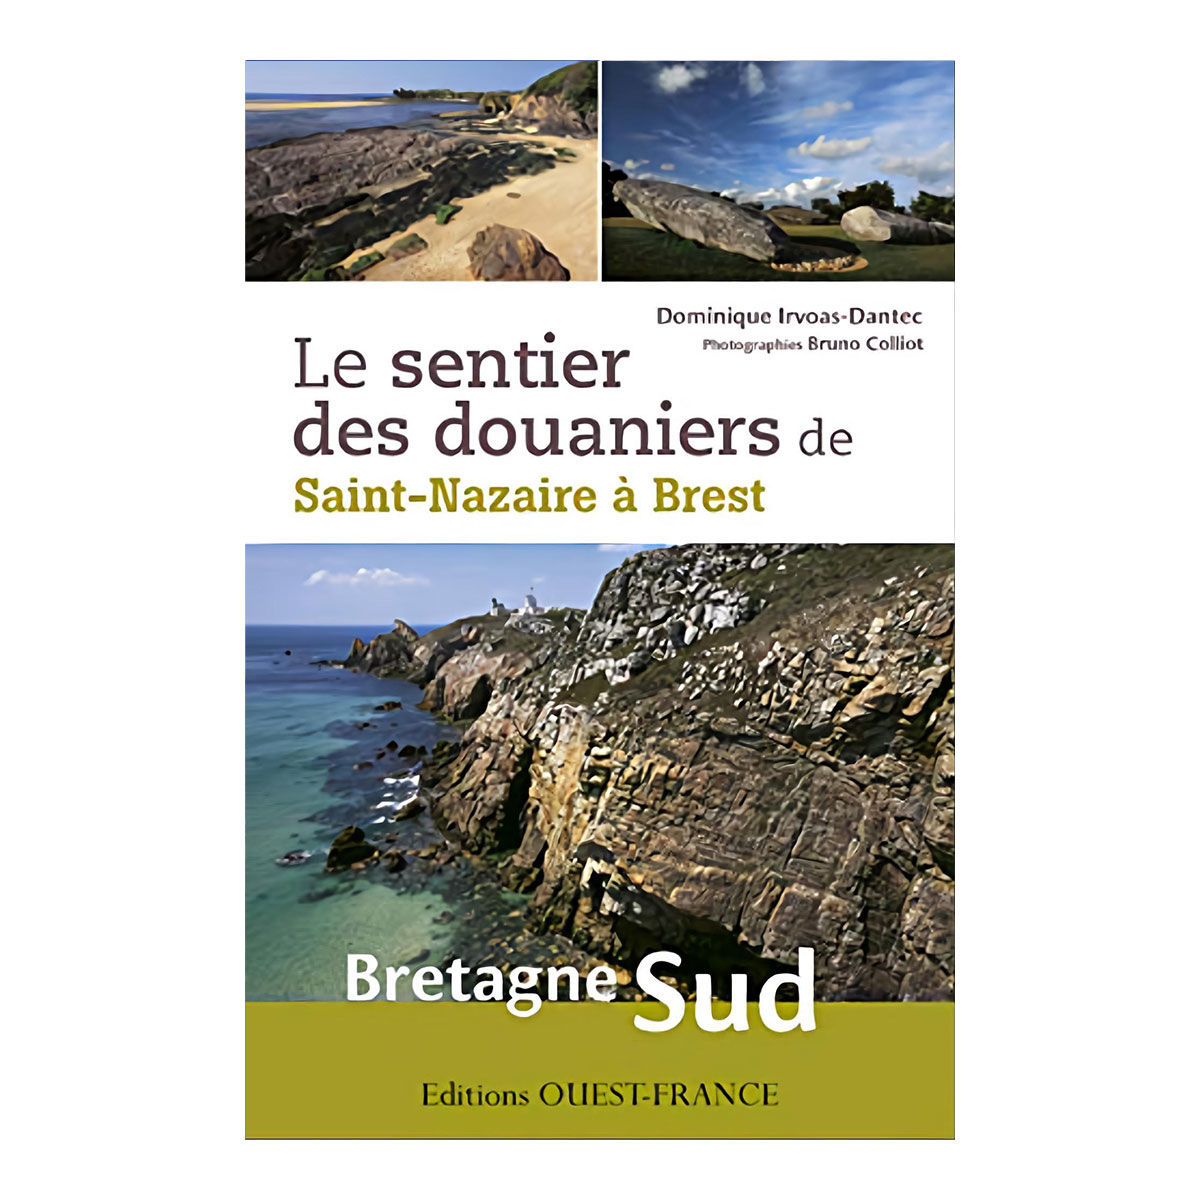 Le sentier des douaniers - Bretagne Sud - Dominique Irvoas-Dantec